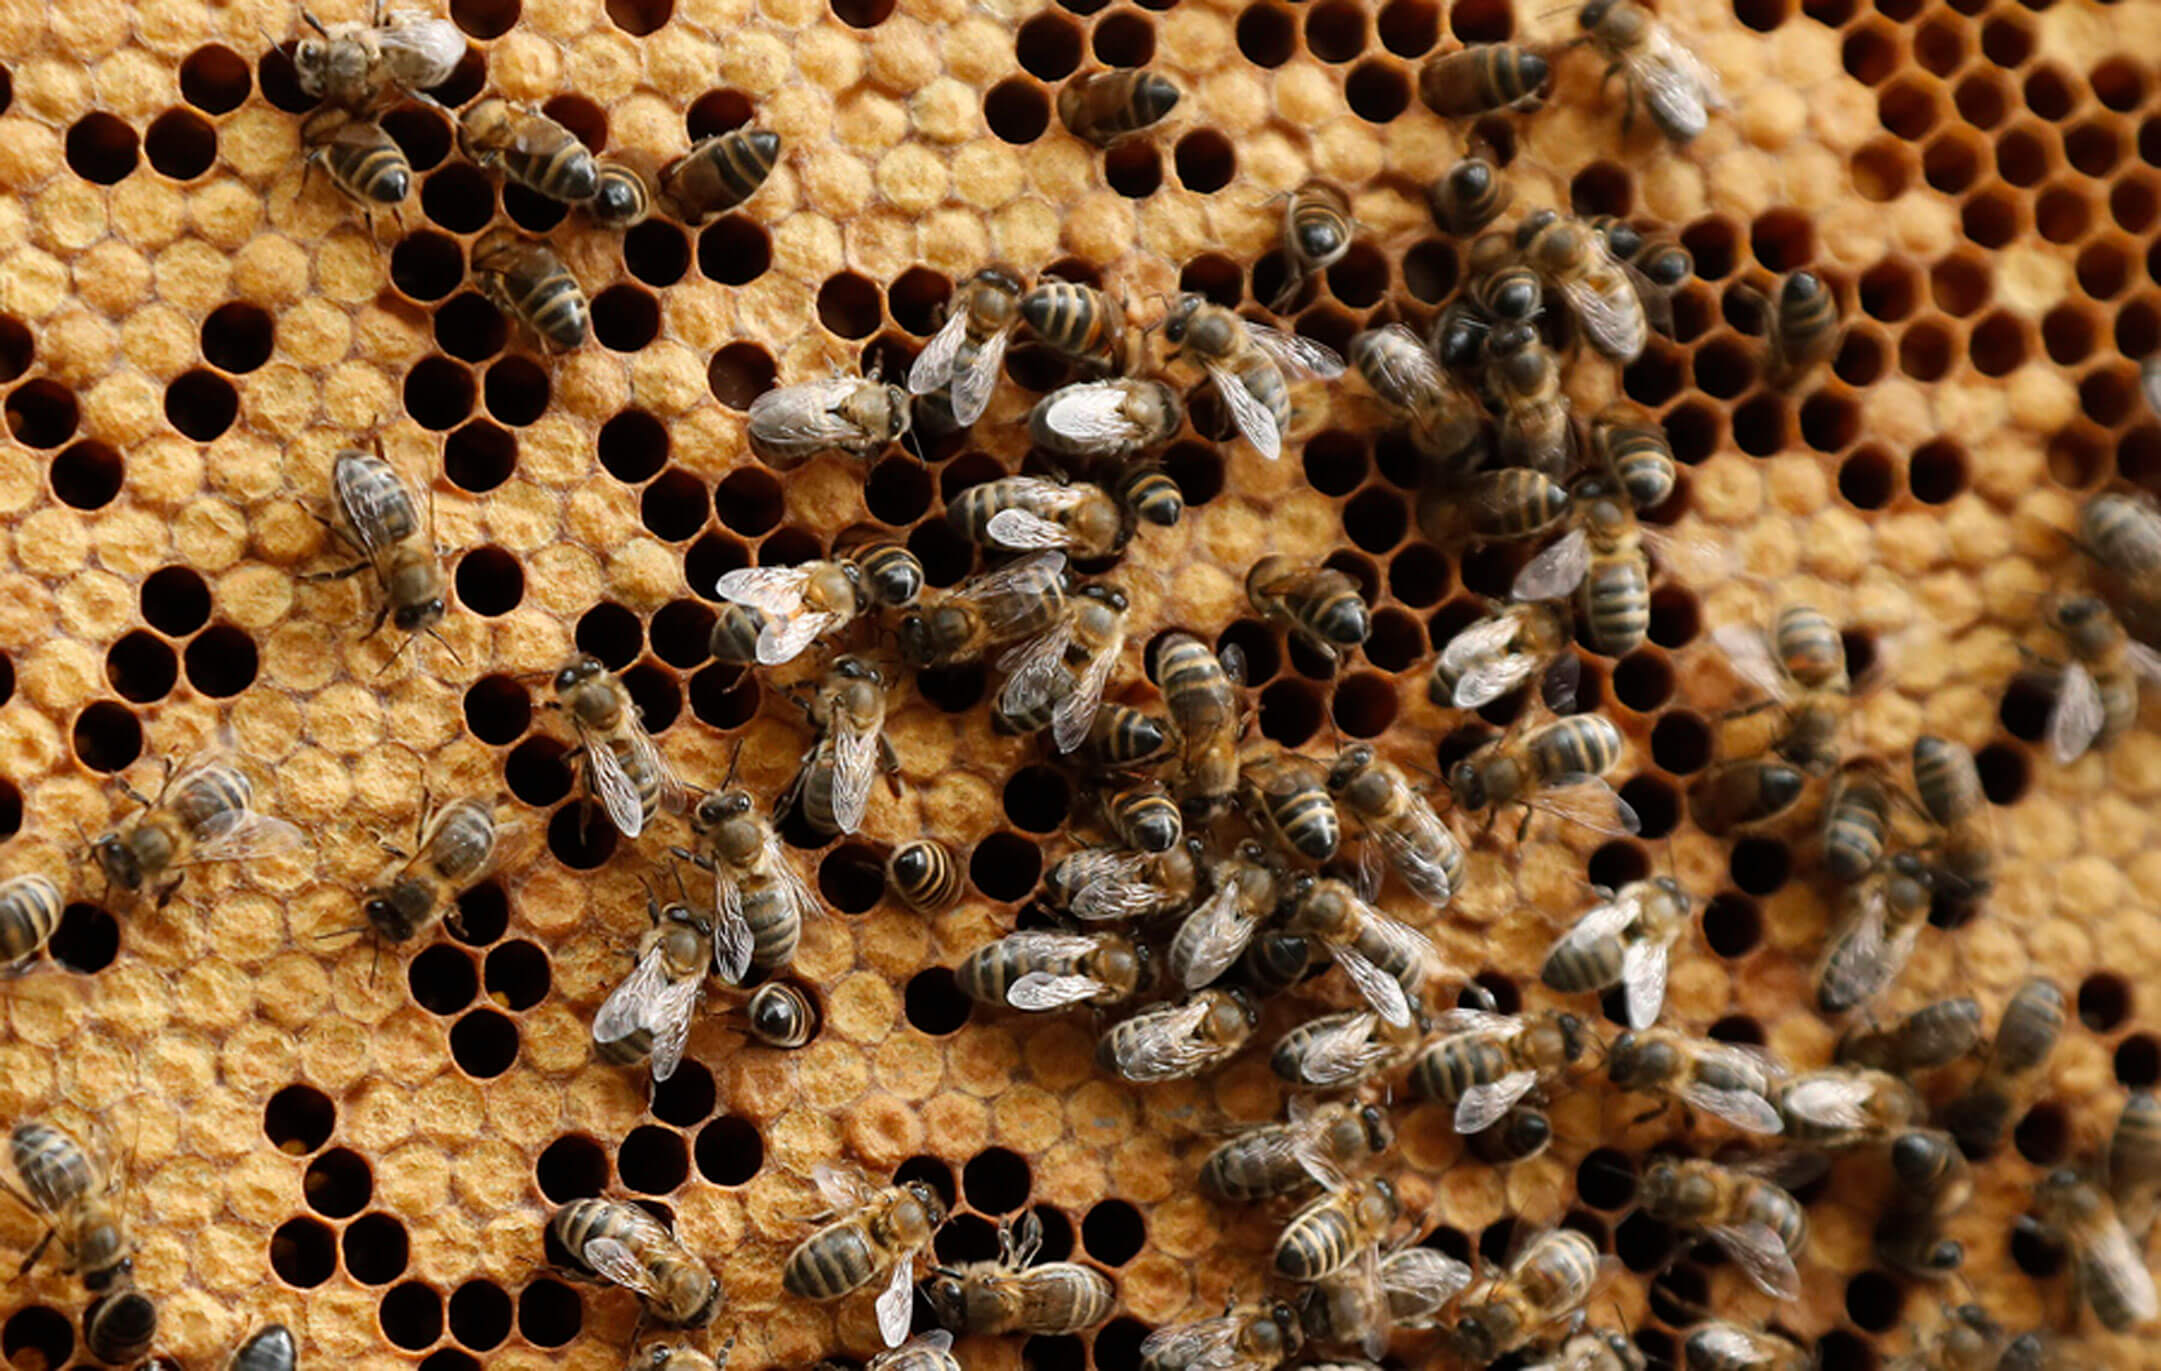 Σε κρίσιμη κατάσταση ένας 70χρονος που δέχτηκε επίθεση από χιλιάδες μέλισσες